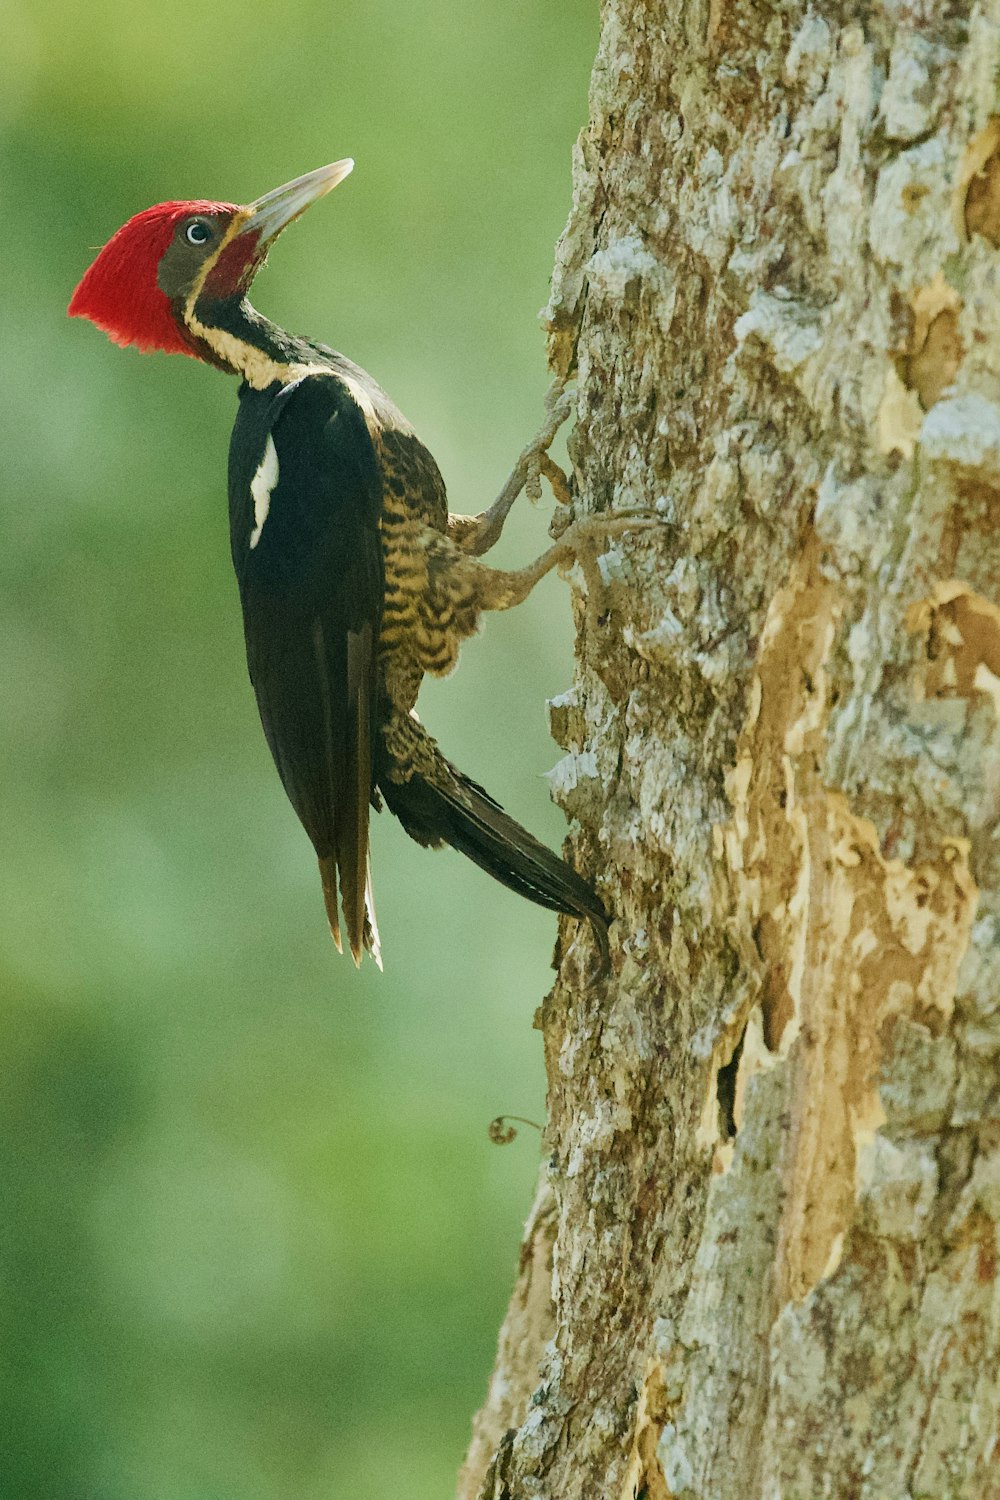 a woodpecker climbing up a tree trunk